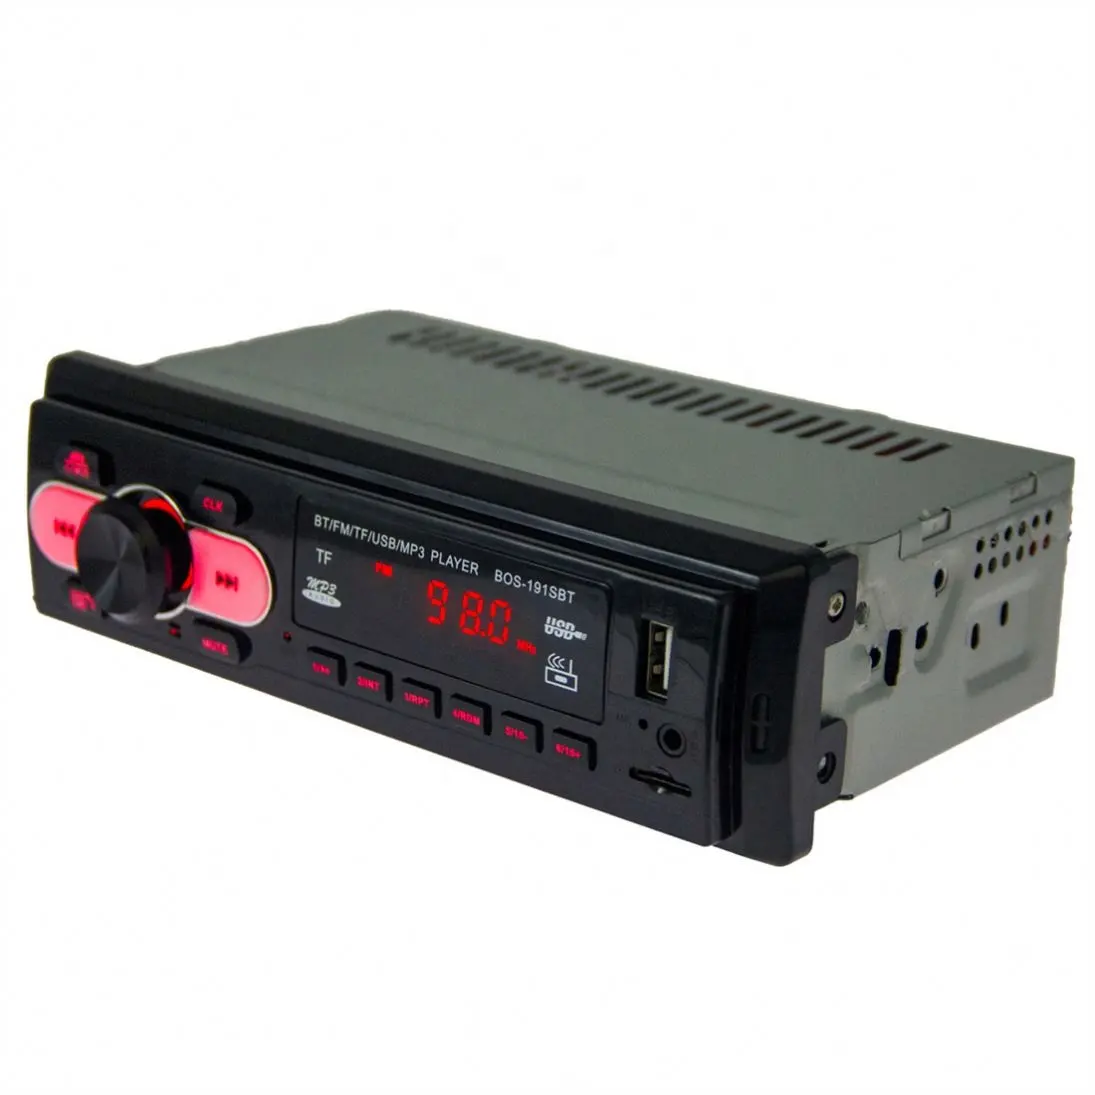 Giá Rẻ Nhất Bán Buôn Xe Cd Đài Phát Thanh Stereo Player Pioneer Mp3